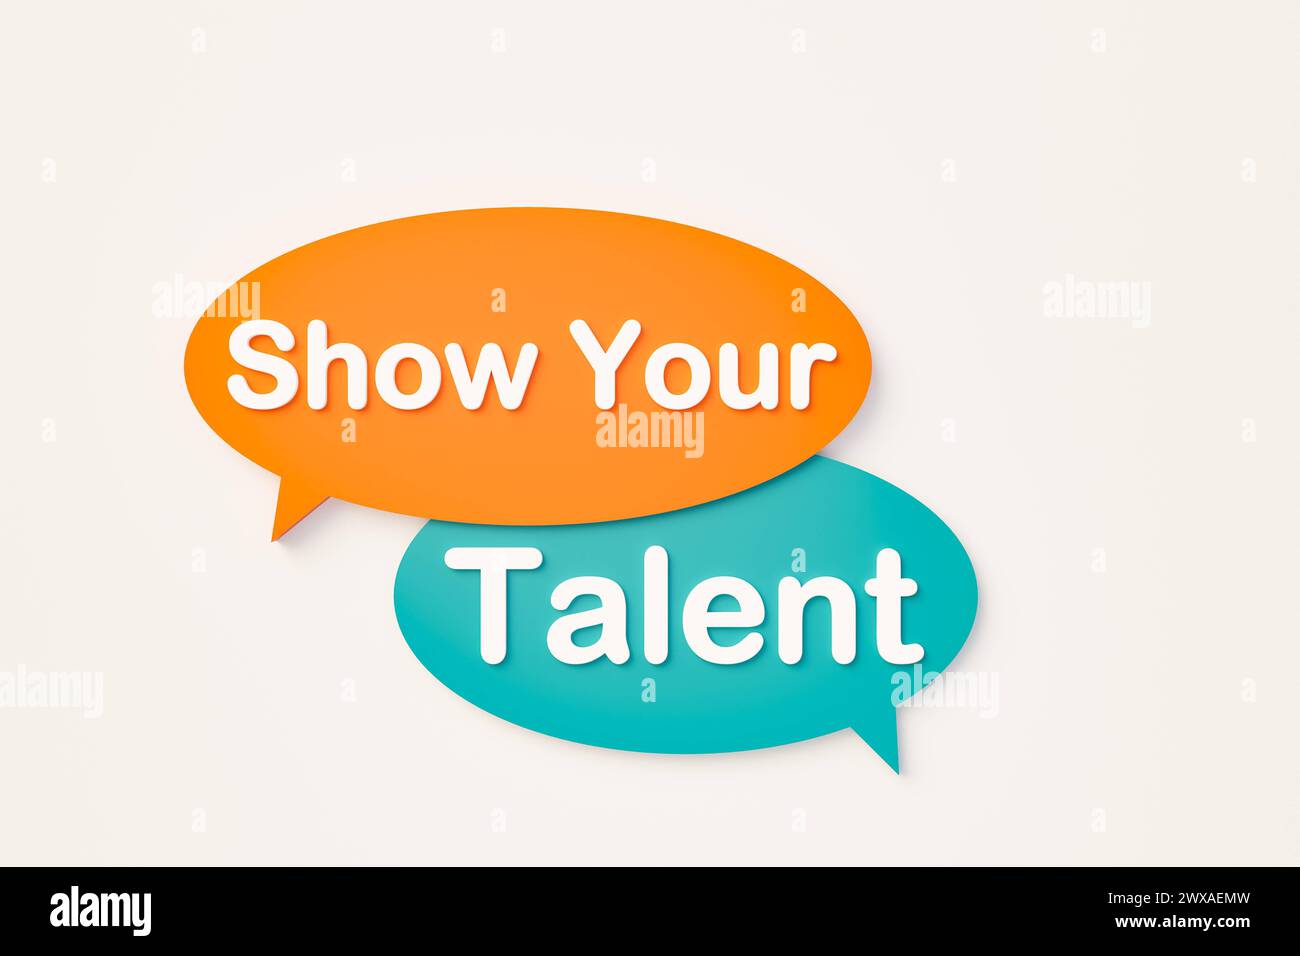 Zeigen Sie Ihr Talent, Online-Sprechblase. Zeigen Sie Ihr Talent. Chatblase in Orange, Blau. Veranstaltung, Unterhaltung, Theater, Probe, Wettbewerb, talen Stockfoto